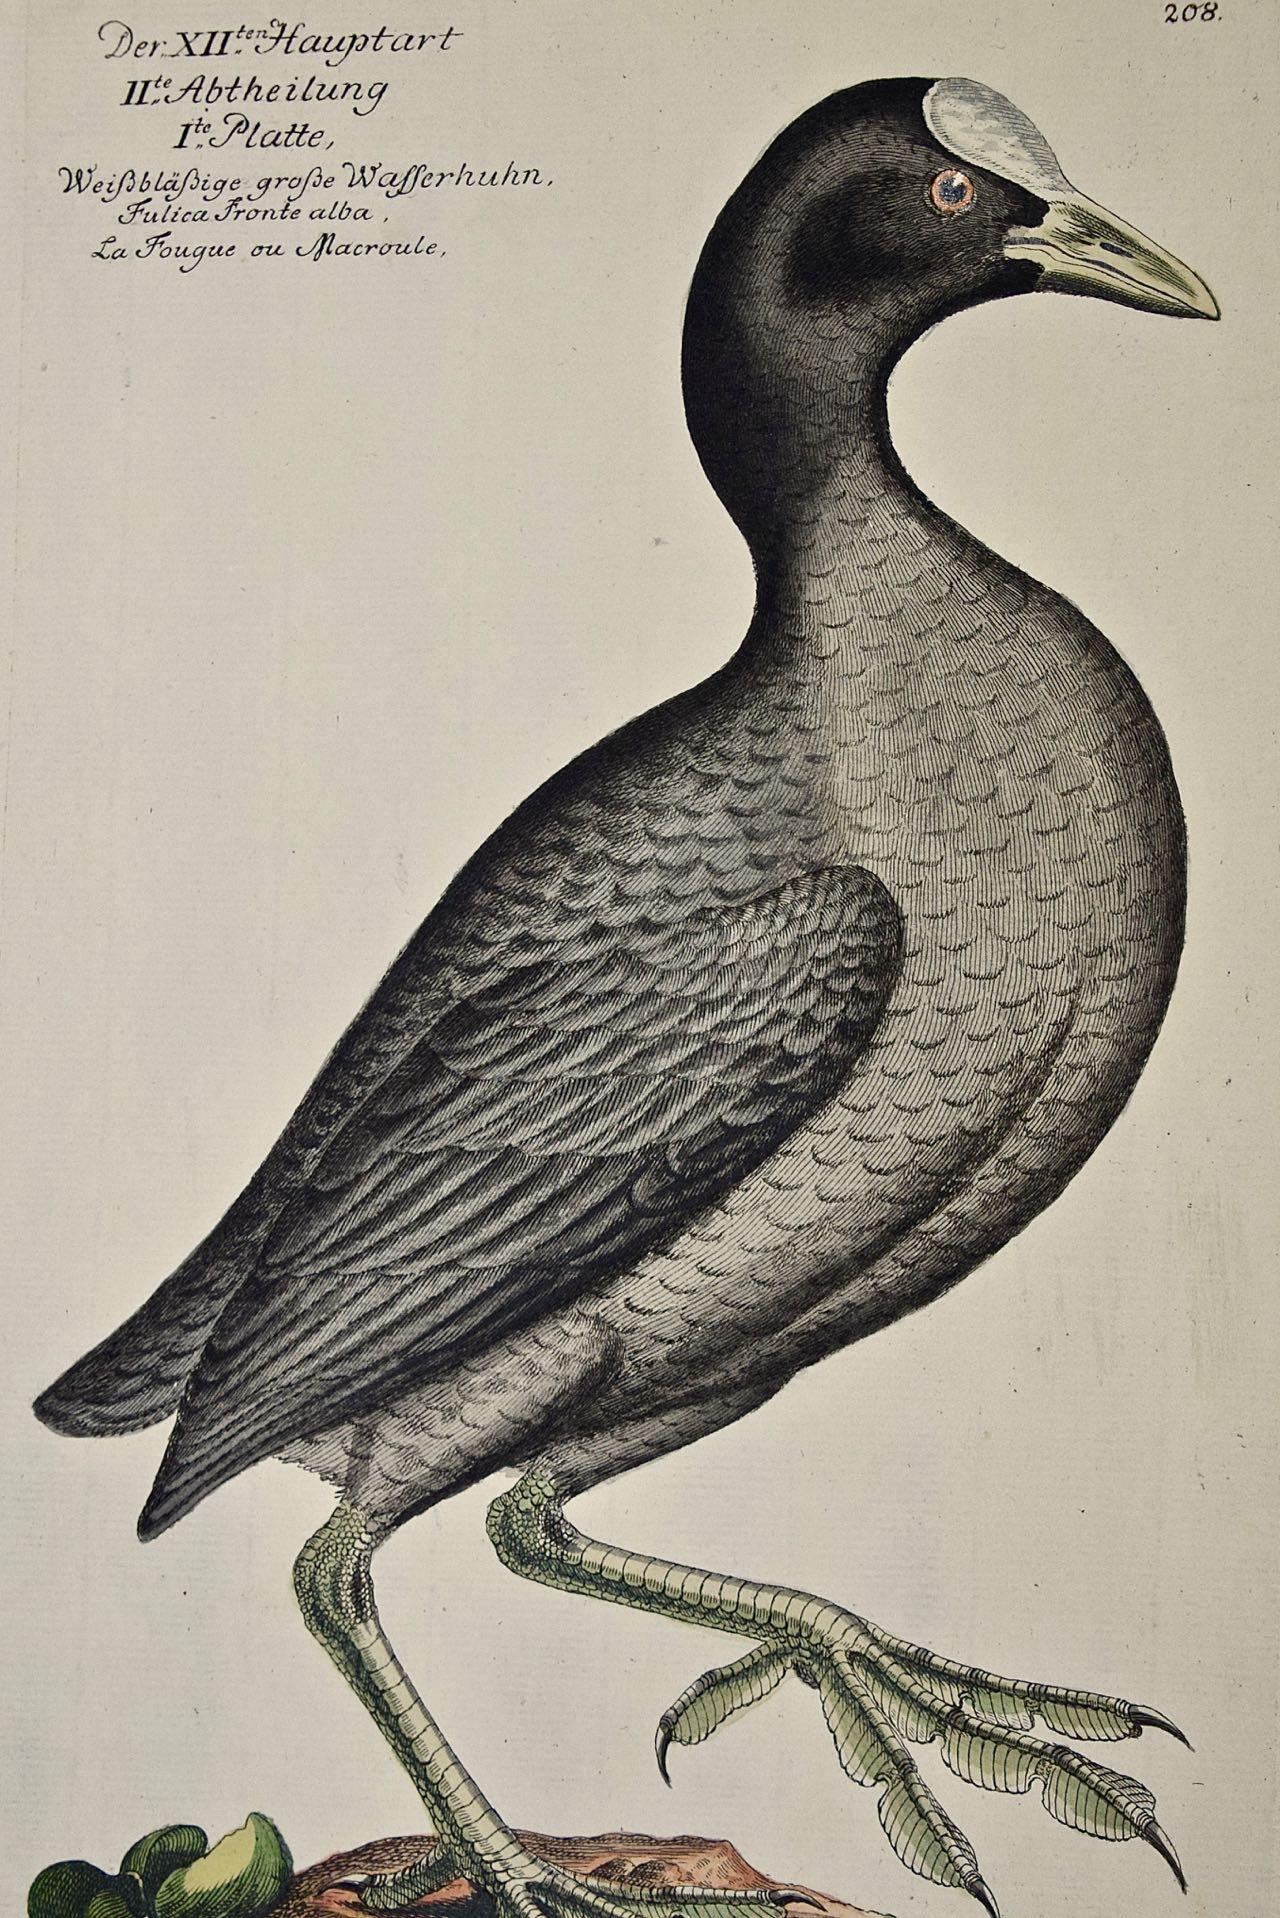 Une gravure de Frisch du 18ème siècle colorée à la main « Wasserhuhn » ou oiseau coot - Print de Johann Leonhard Frisch